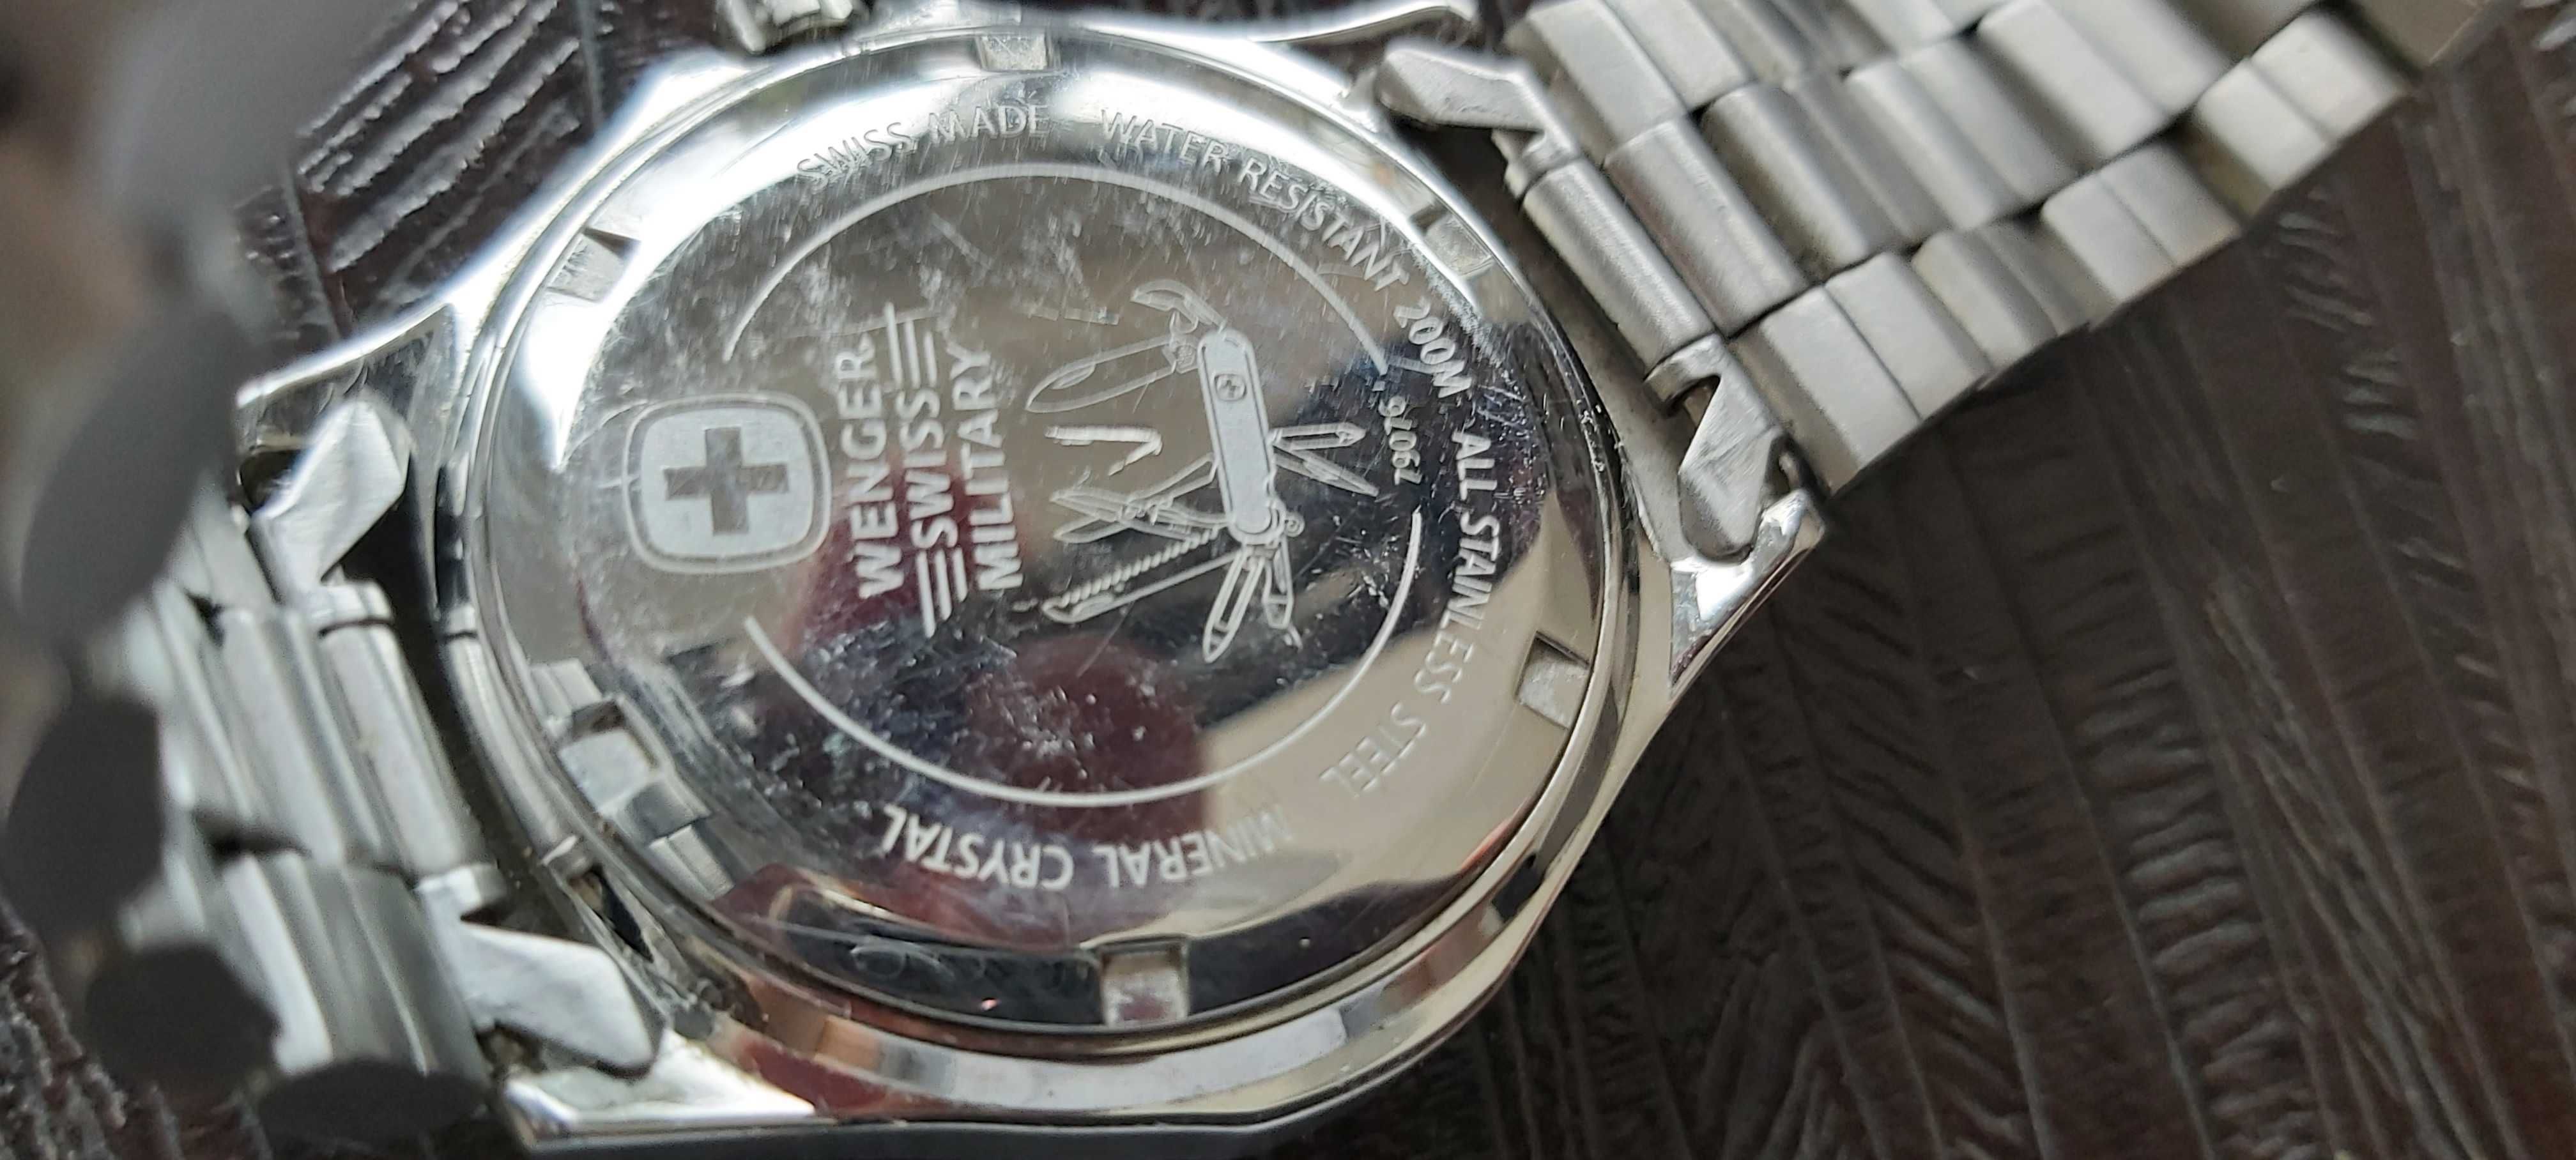 Wenger swiss military zegarek bdb